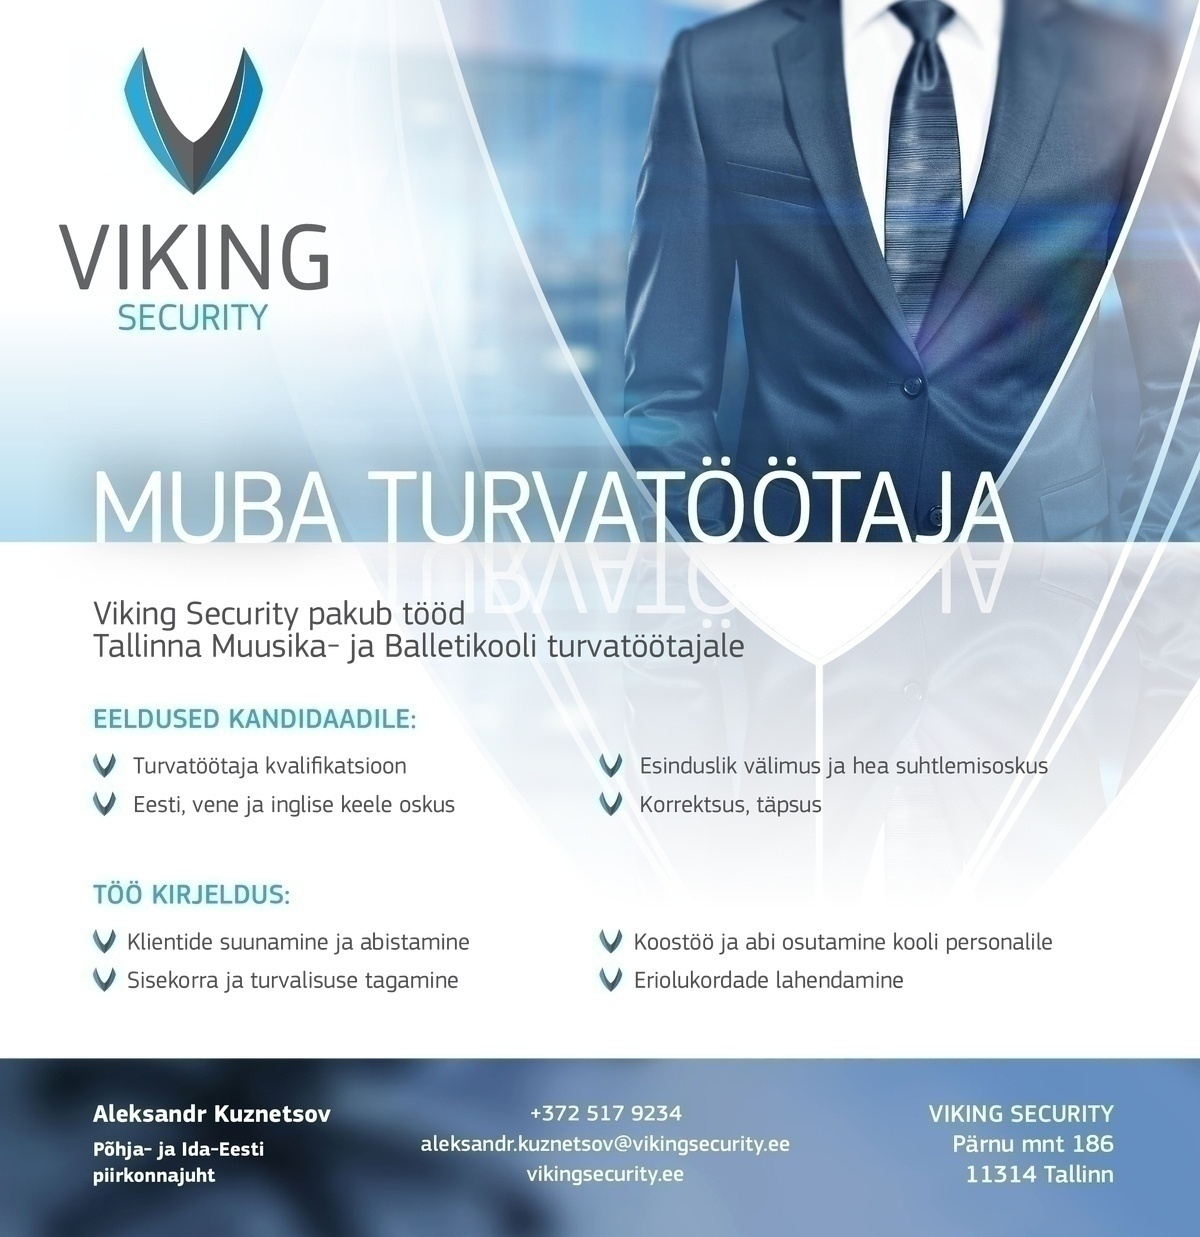 Viking Security AS Tallinna Muusika- ja Balletikooli turvatöötaja